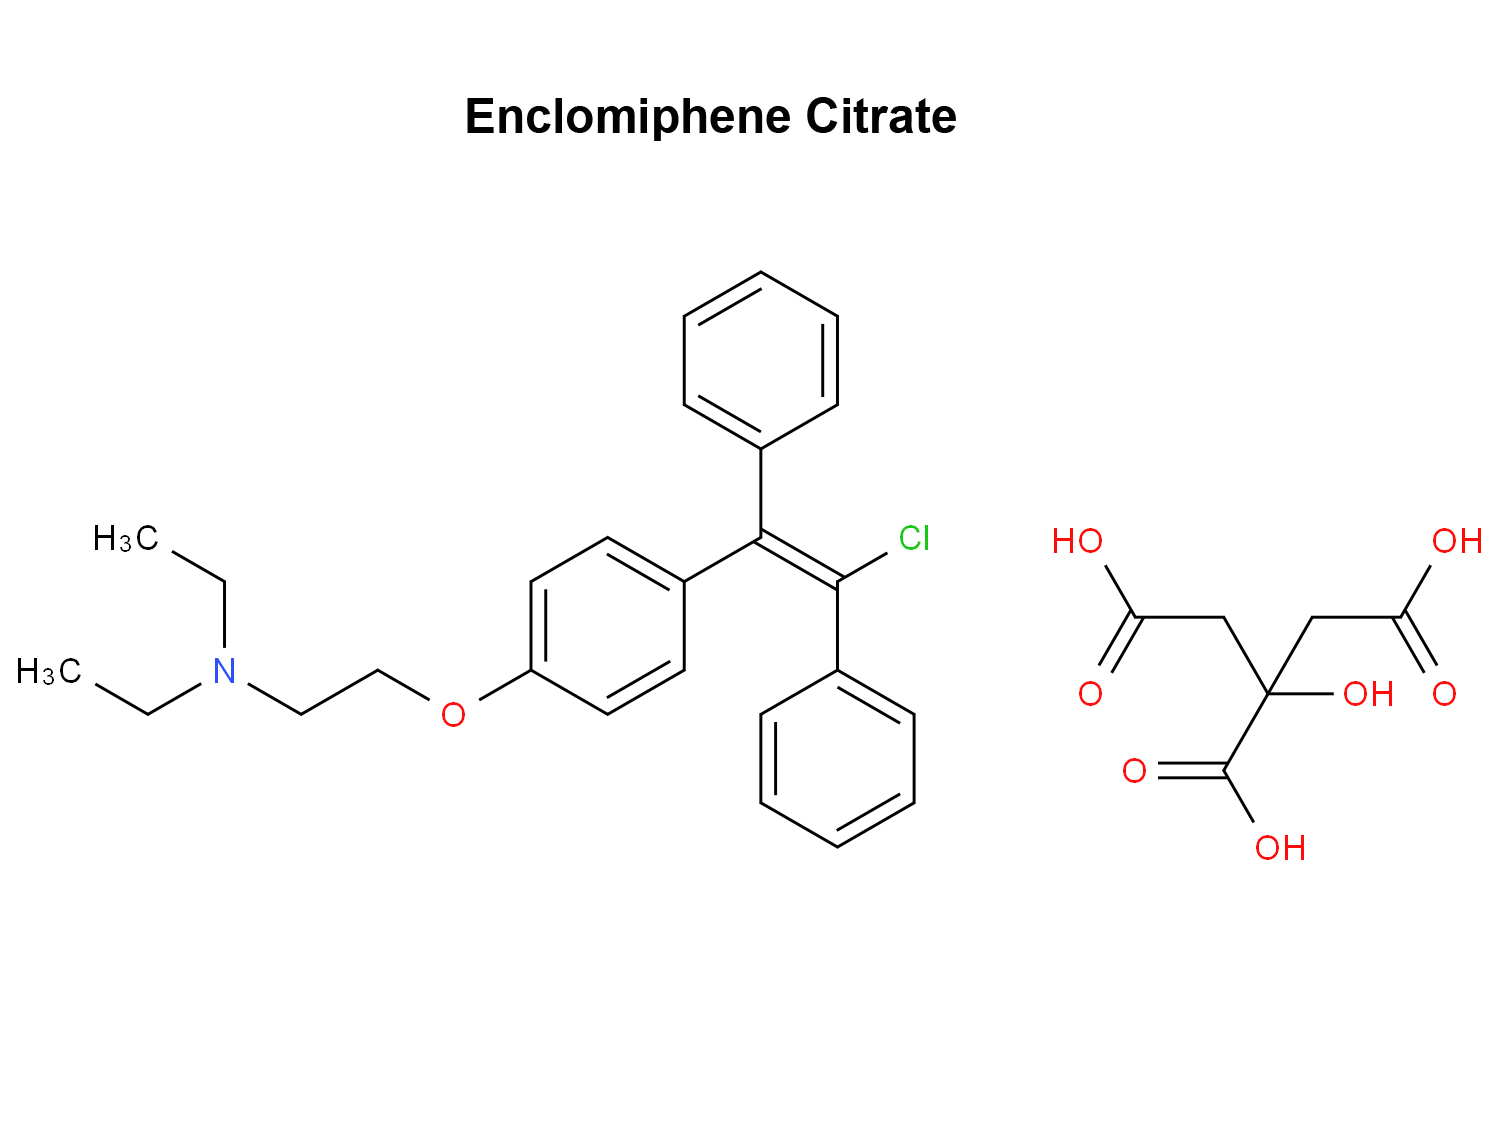 Enclomiphene Citrate 7599-79-3 antagonist derbynnydd estrogen dethol